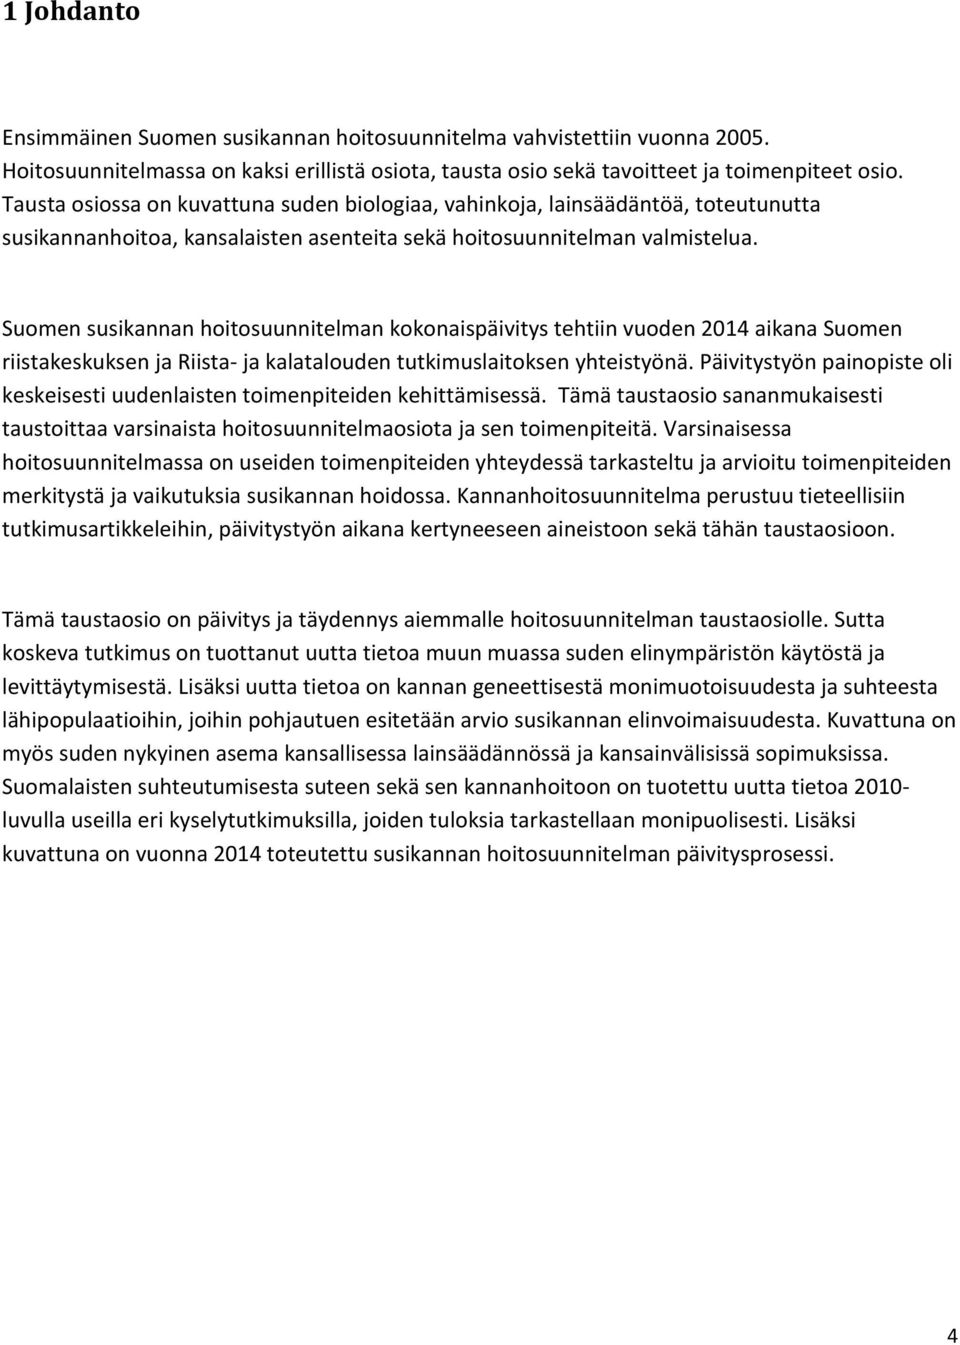 Suomen susikannan hoitosuunnitelman kokonaispäivitys tehtiin vuoden 2014 aikana Suomen riistakeskuksen ja Riista- ja kalatalouden tutkimuslaitoksen yhteistyönä.